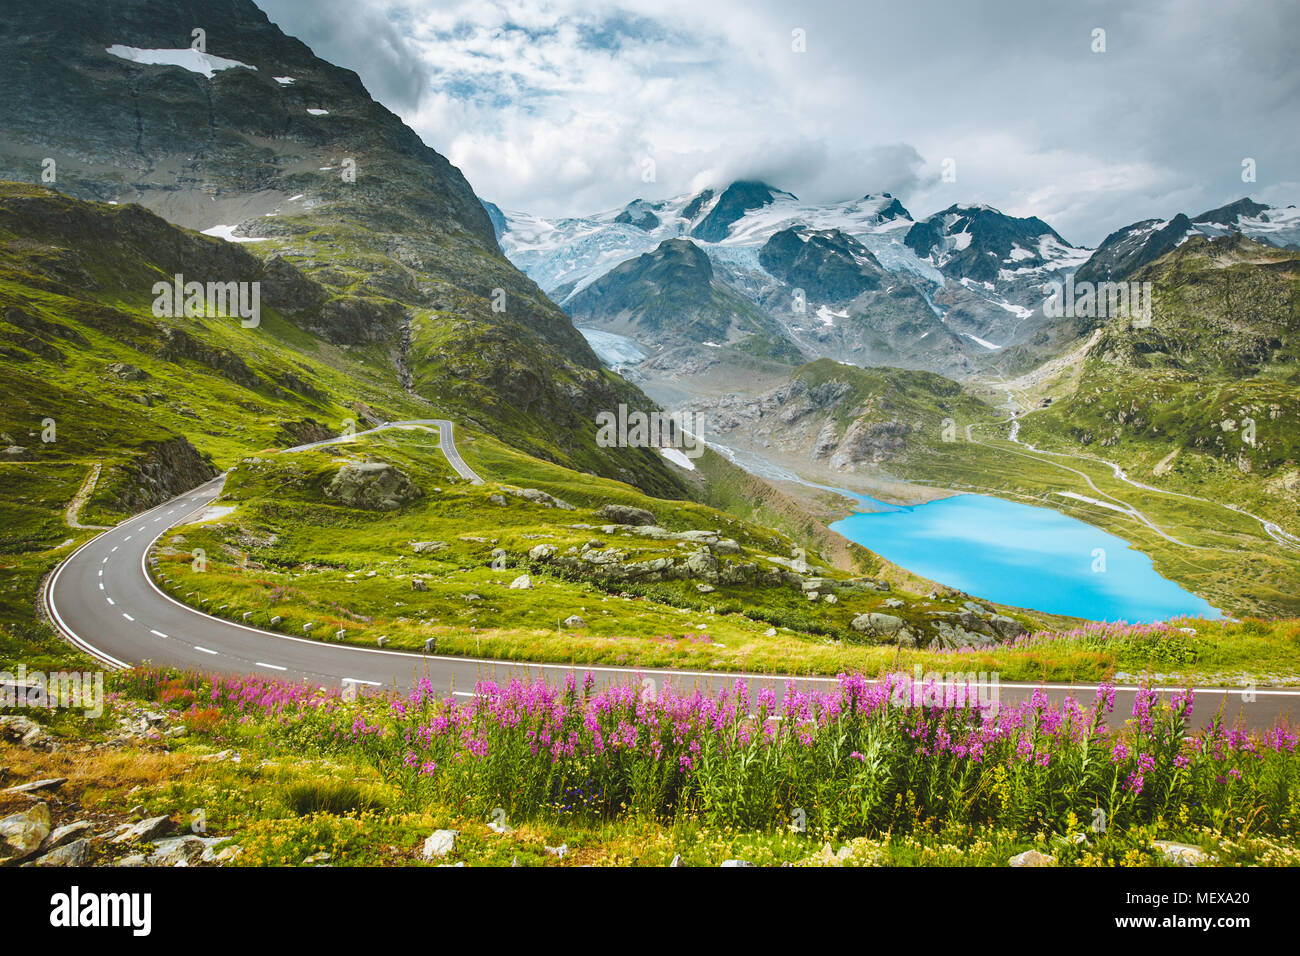 Wunderschöne Aussicht auf kurvenreichen Pass Road in den Alpen mit Gipfeln, Gletschern, Seen und grünen Wiesen mit blühenden Blumen im Sommer Stockfoto